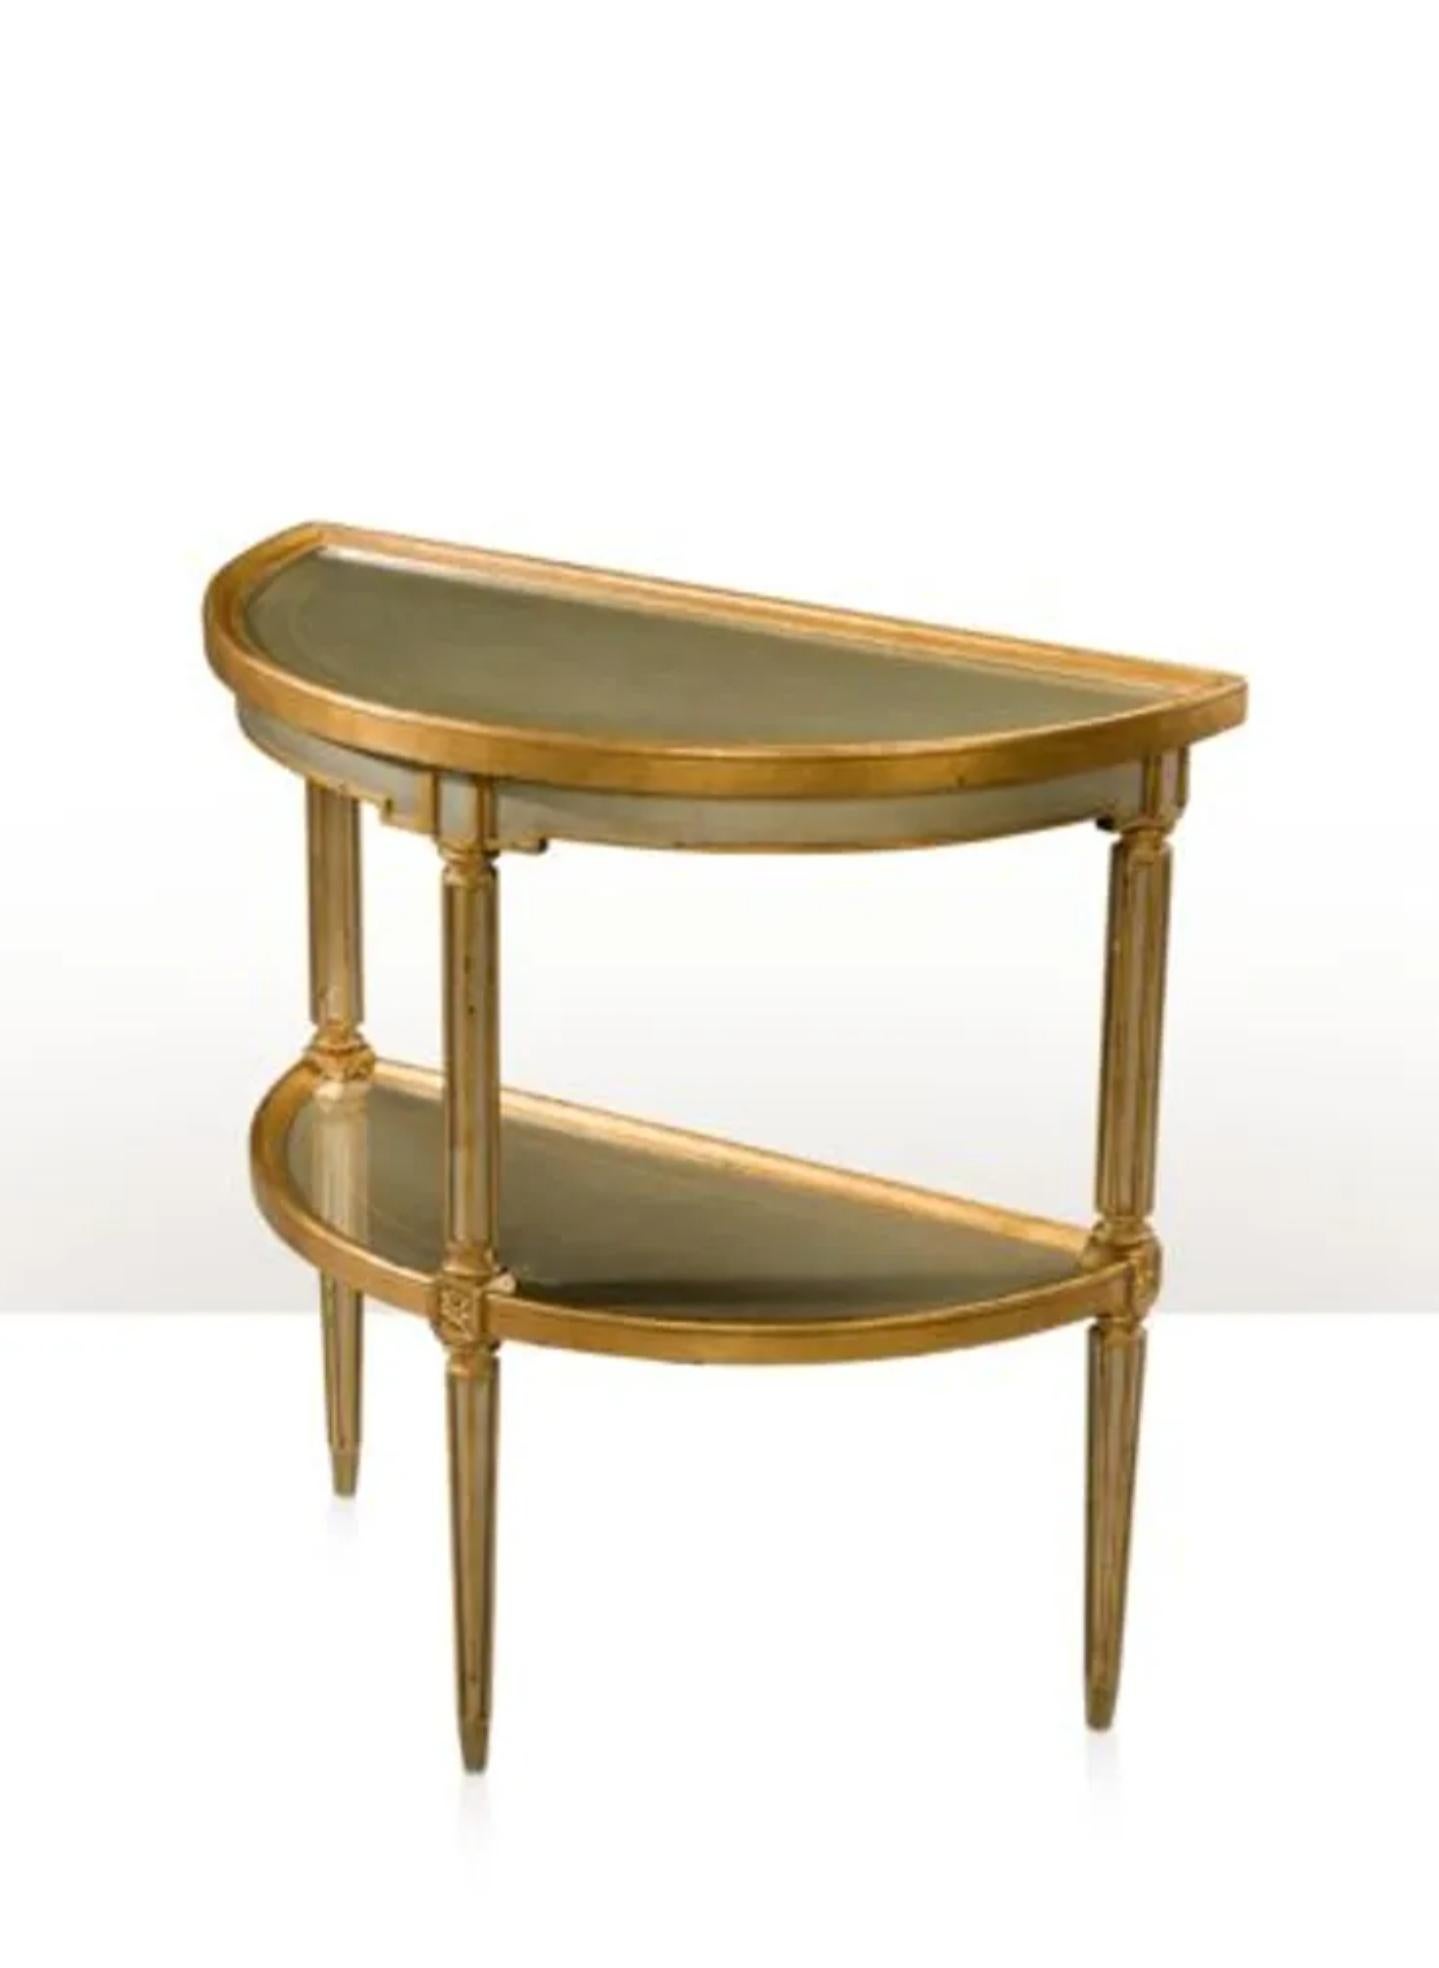 Table console en églomisé 'Venetian Waters' de style italien intemporel 5352-006 par le fabricant de meubles de qualité Theodore Alexander.

La grandeur de la Venise d'aujourd'hui se retrouve dans le look de la table console églomisée Venetian